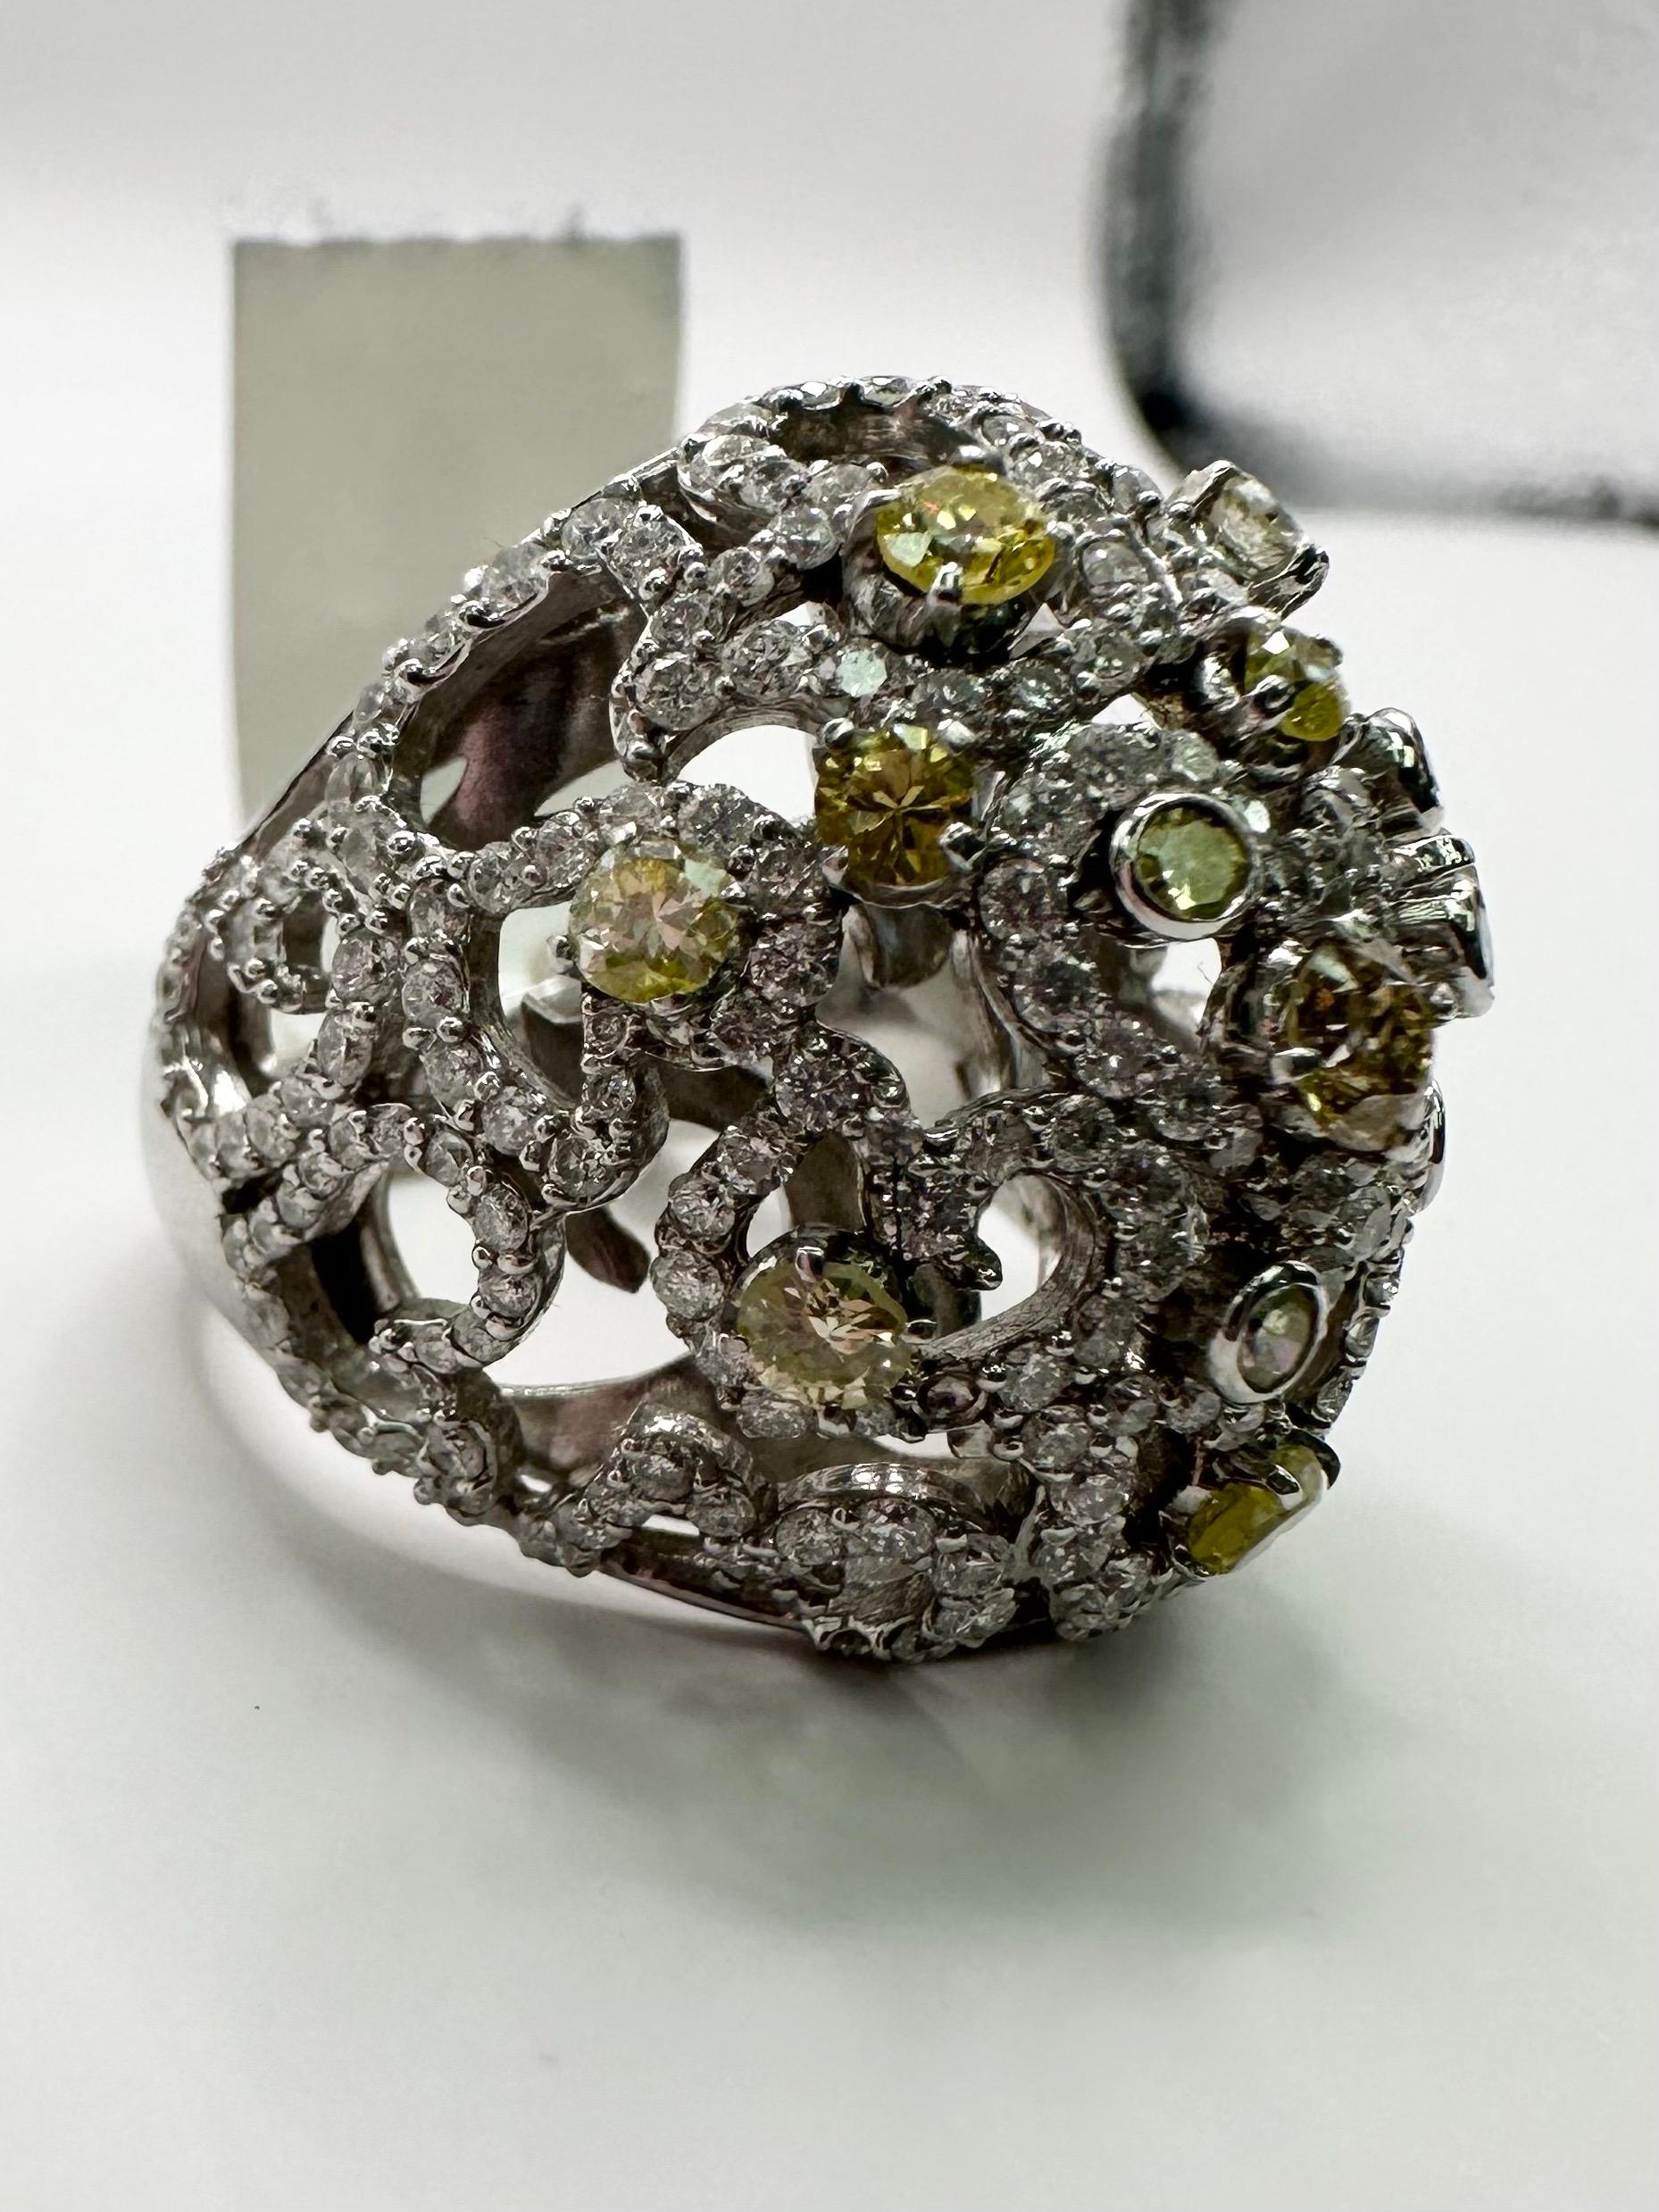 Atemberaubende Kuppel Ring mit bunten Diamanten in 14KT Weißgold, gibt eine fantastische Cocktail-Vibe und wird Tonne Komplimente zu bekommen!

Metall Typ: 14KT

Natürliche(r) Diamant(en): 
Farbe: F-G
Schliff:Runder Brillant
Karat: 1,15ct
Klarheit: